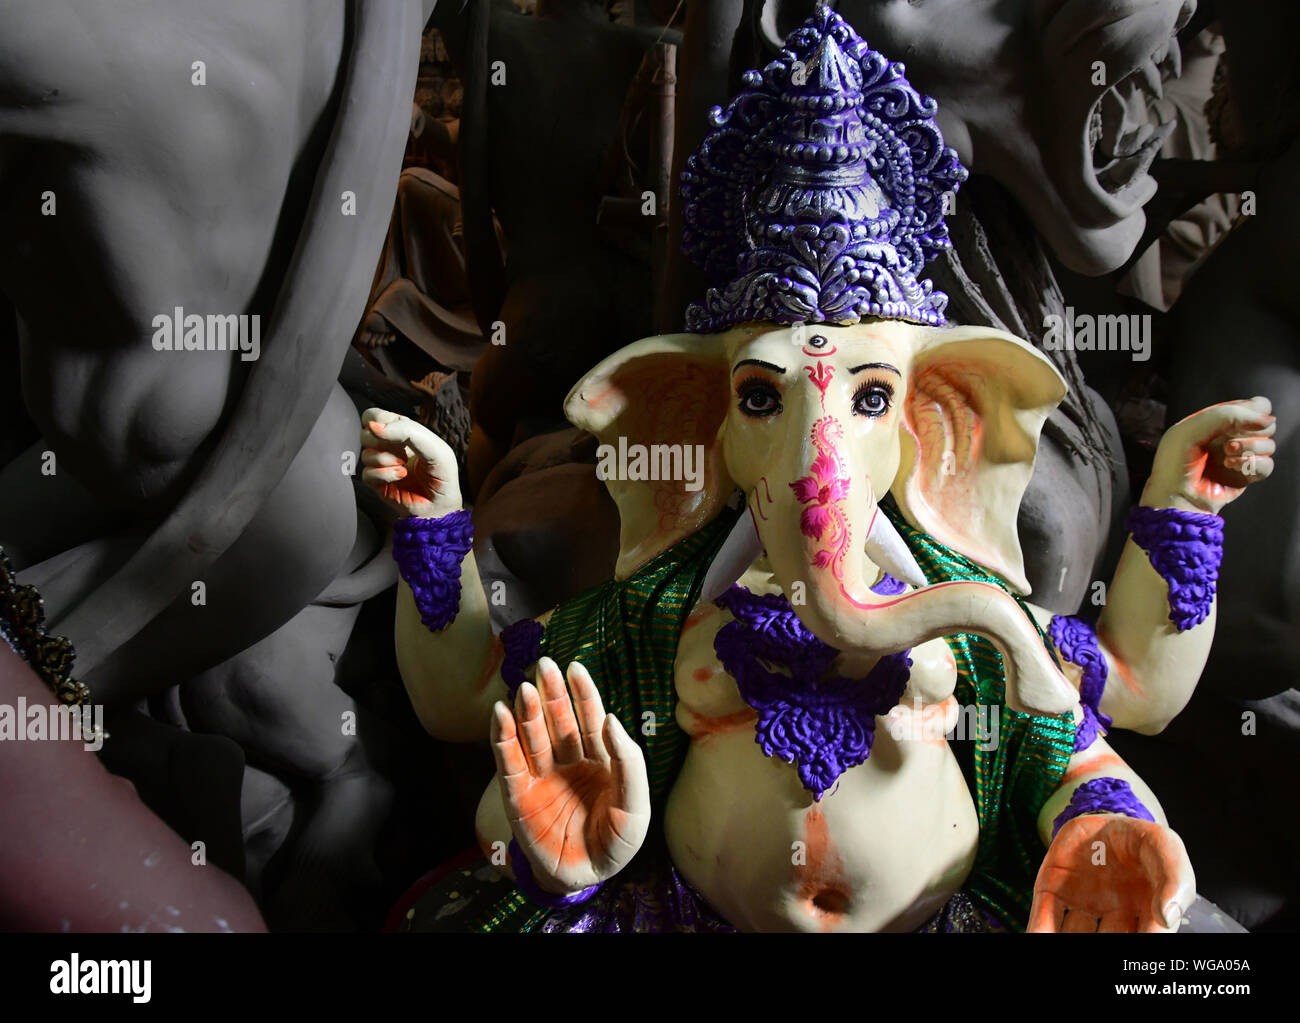 Idol of Lord Ganesha . Artisans of kumortuli , kolkata makes thousands of lord ganesha clay idols every year. Stock Photo